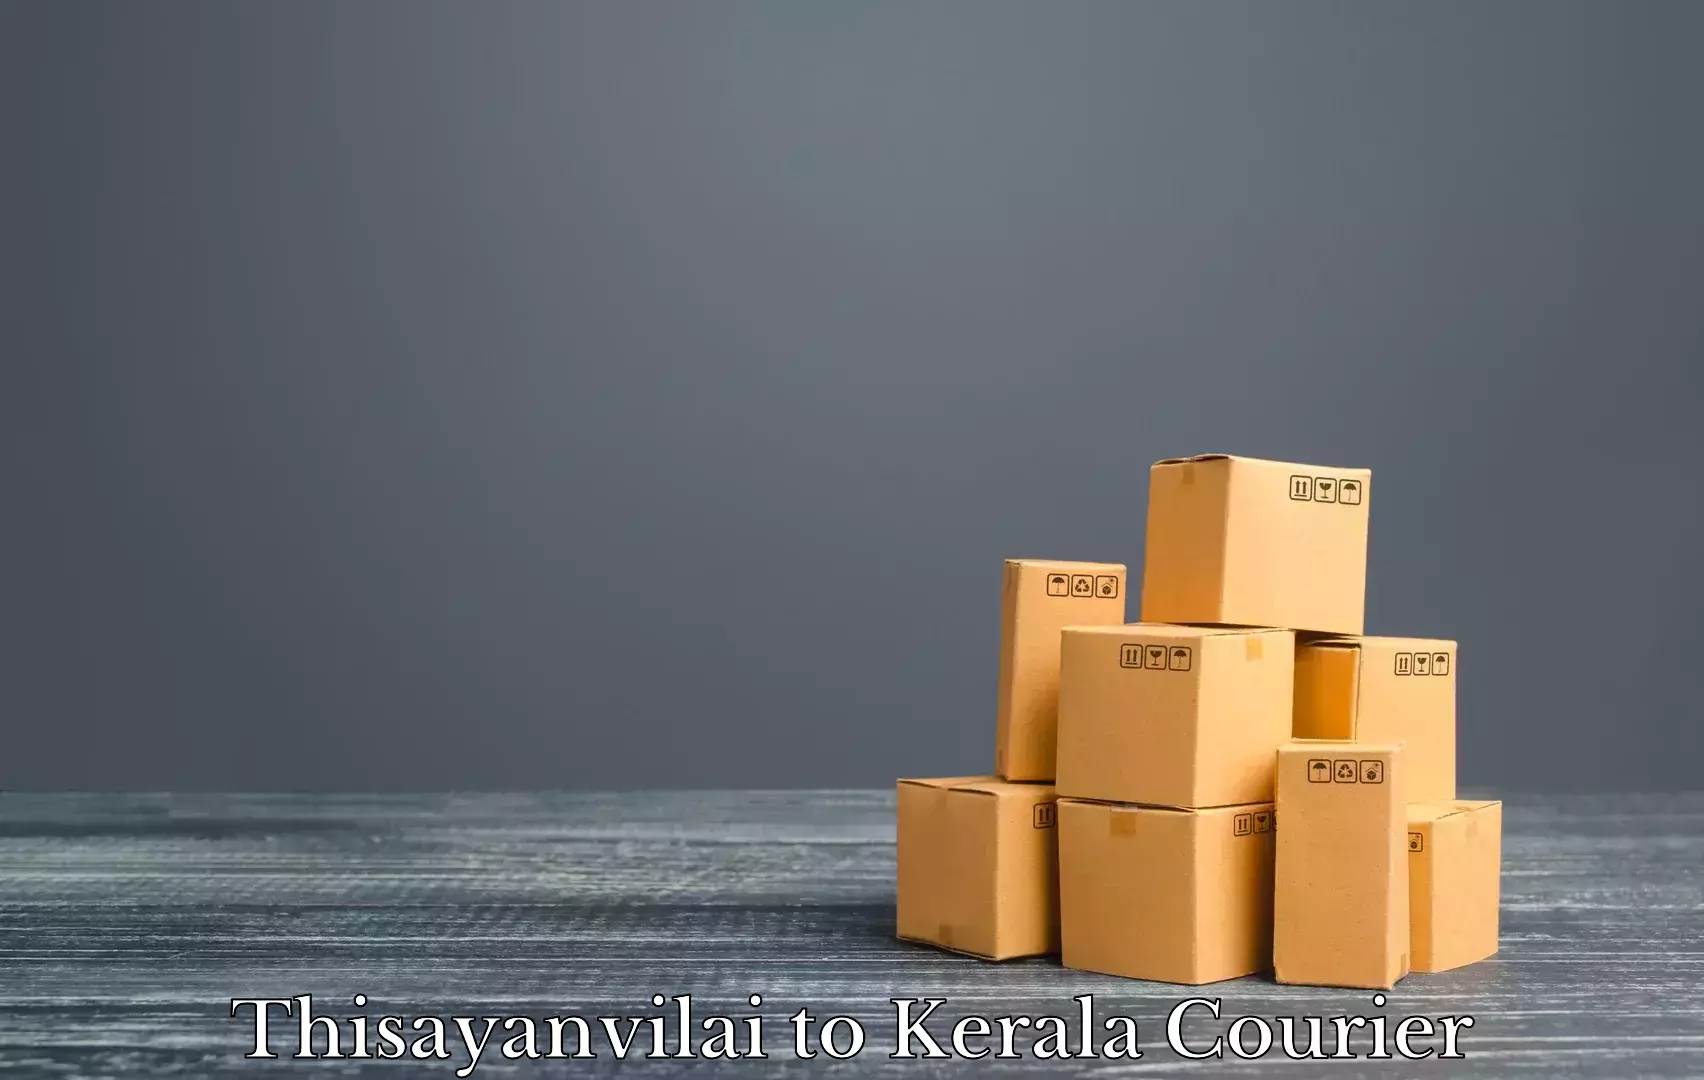 Professional moving company Thisayanvilai to Kerala